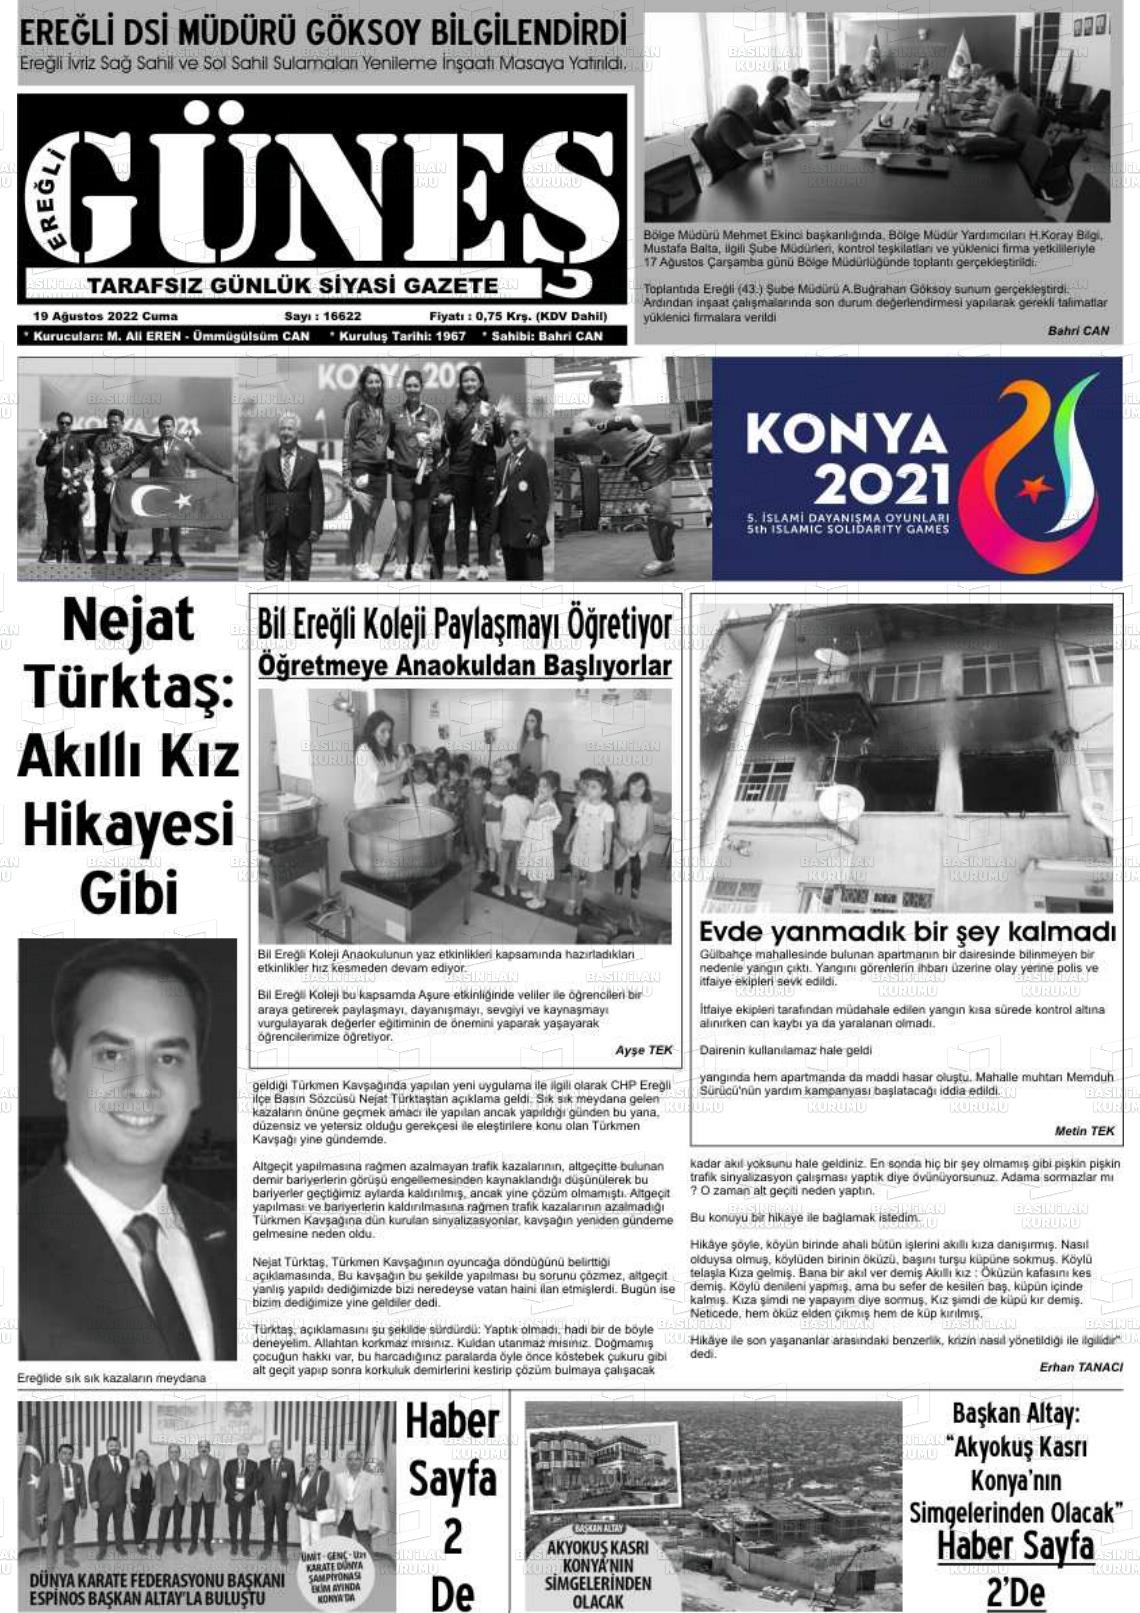 19 Ağustos 2022 Ereğli Güneş Gazete Manşeti